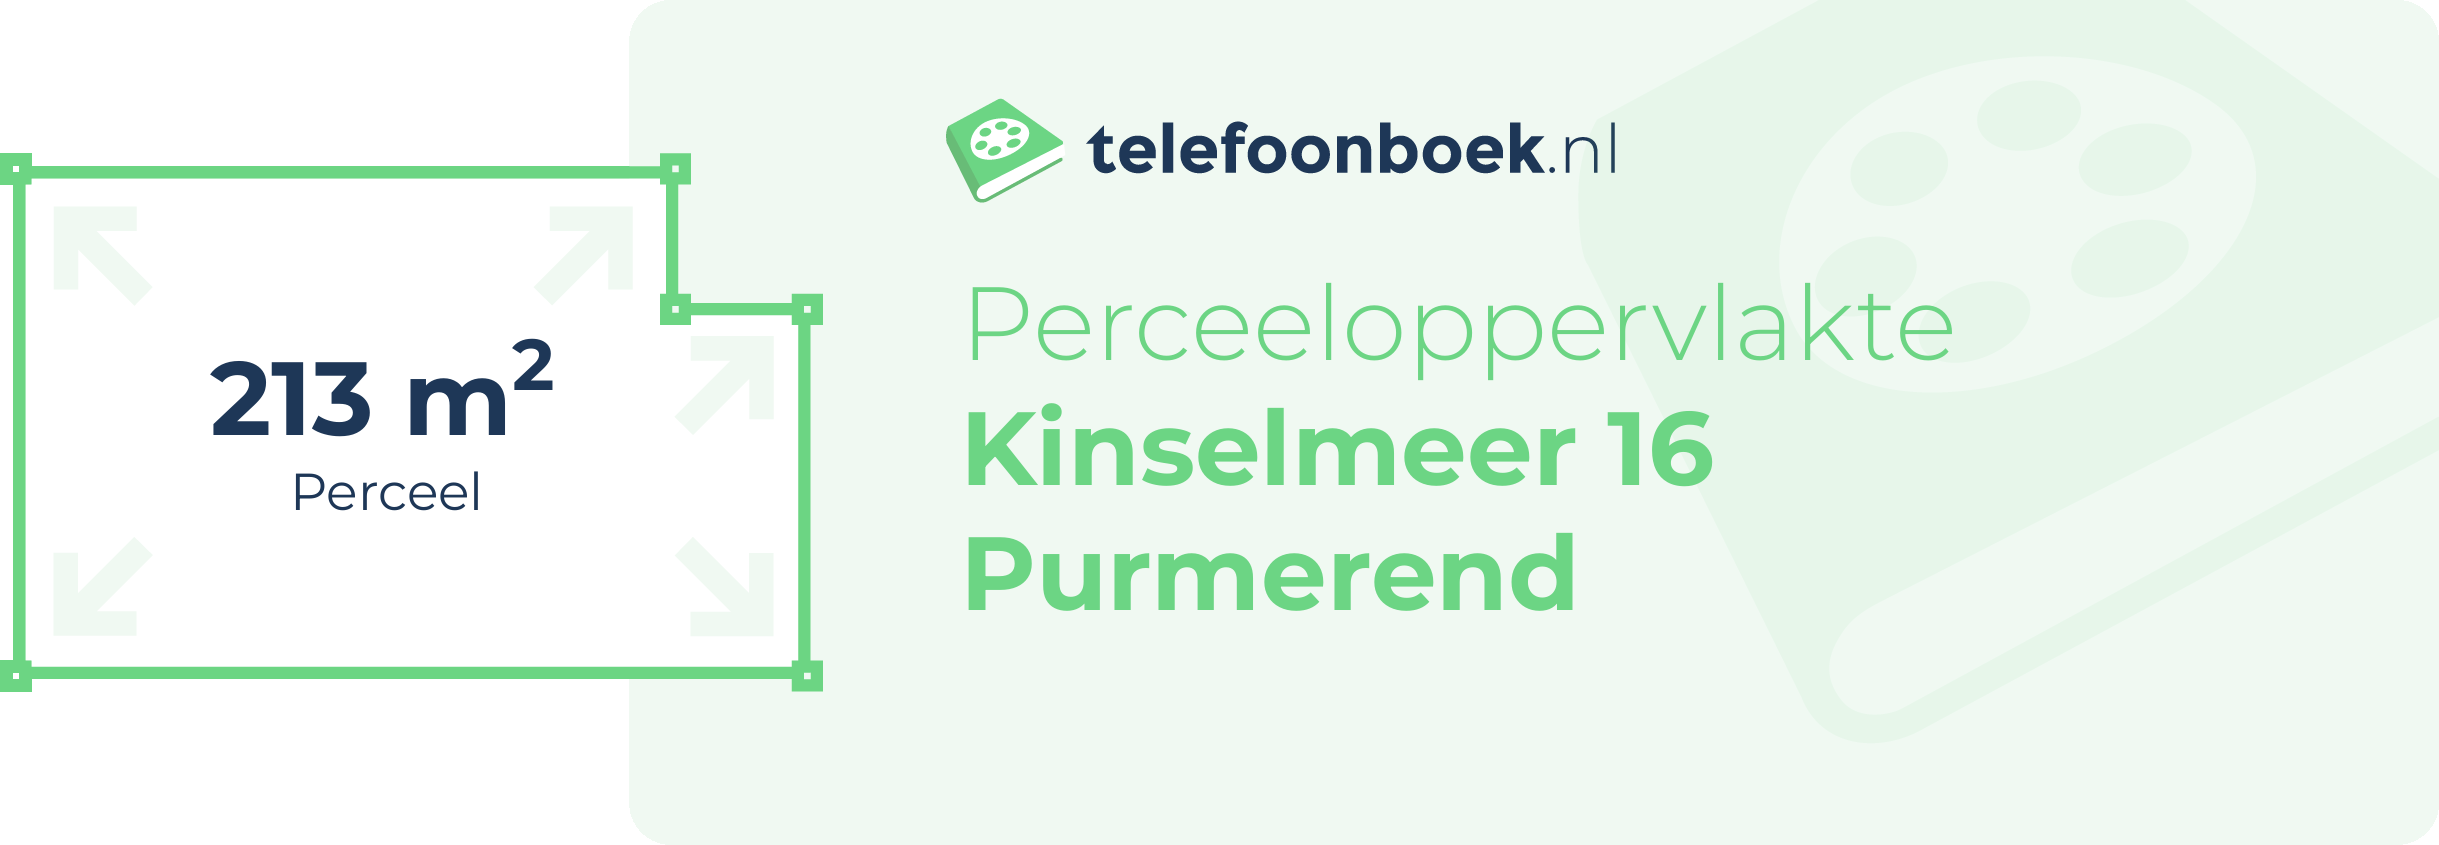 Perceeloppervlakte Kinselmeer 16 Purmerend